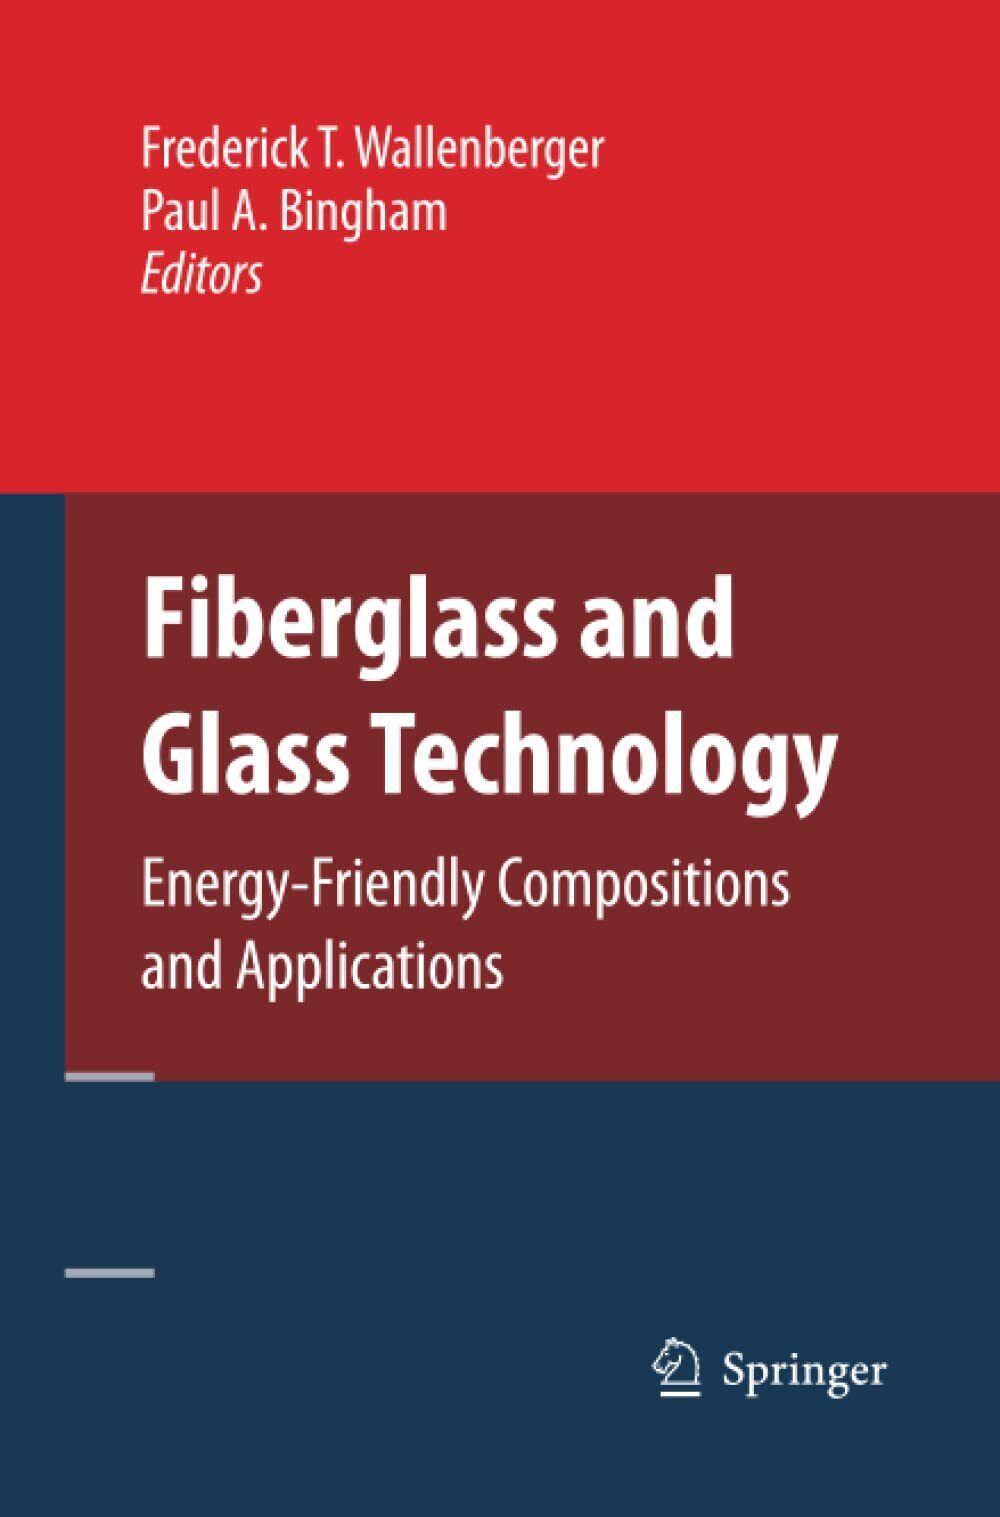 Fiberglass and Glass Technology - Frederick T. Wallenberger - Springer, 2014